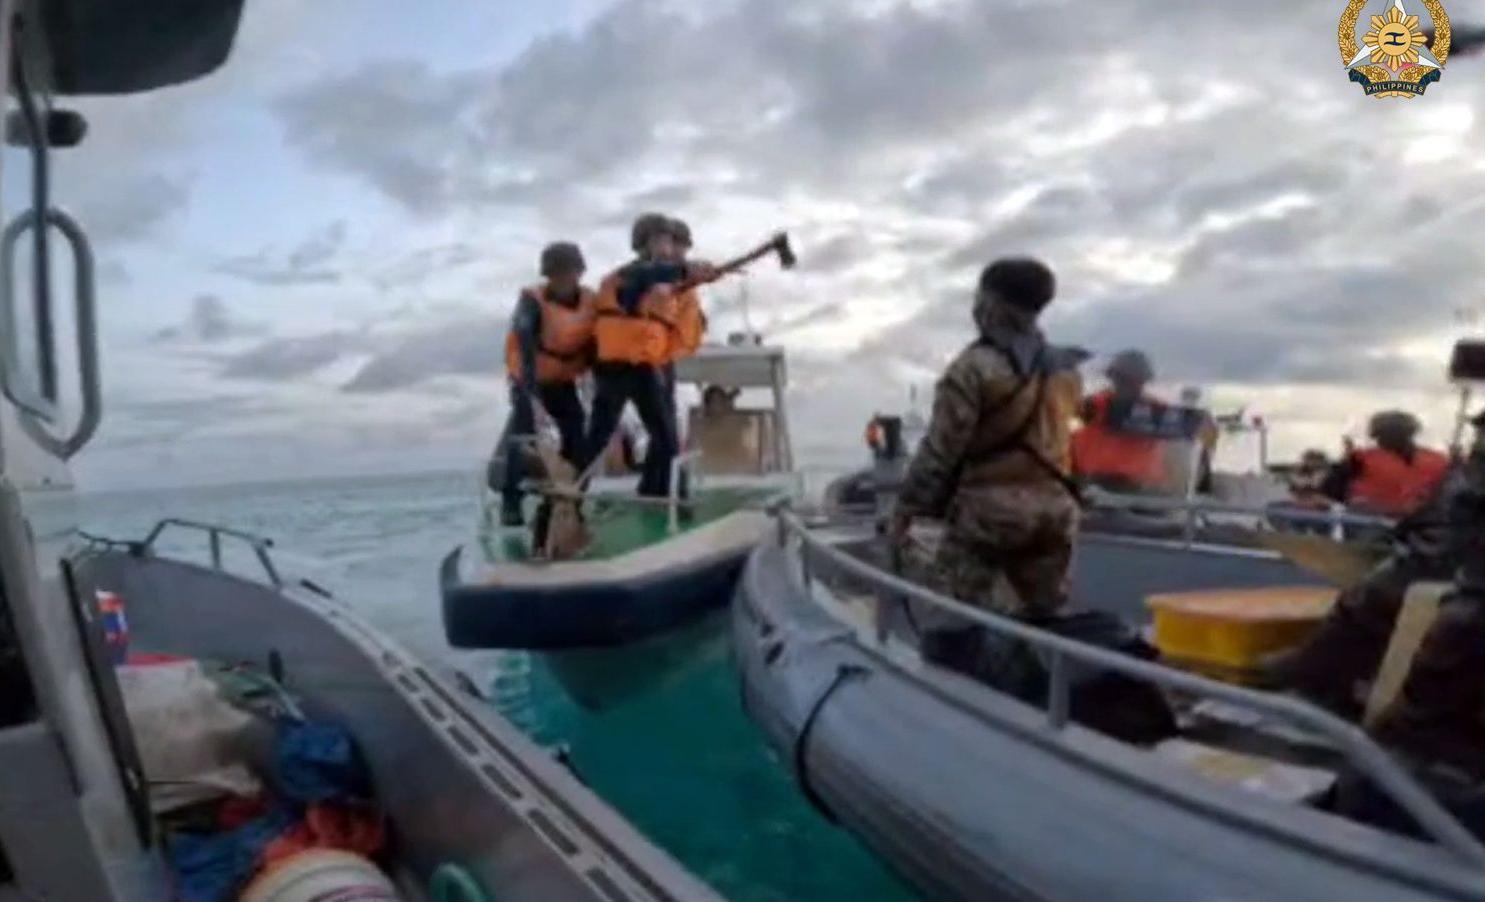 Güney Çin Denizi'nde tehlikeli gerginlik! Şoke eden görüntüler: Balta ve bıçakla saldırdılar...